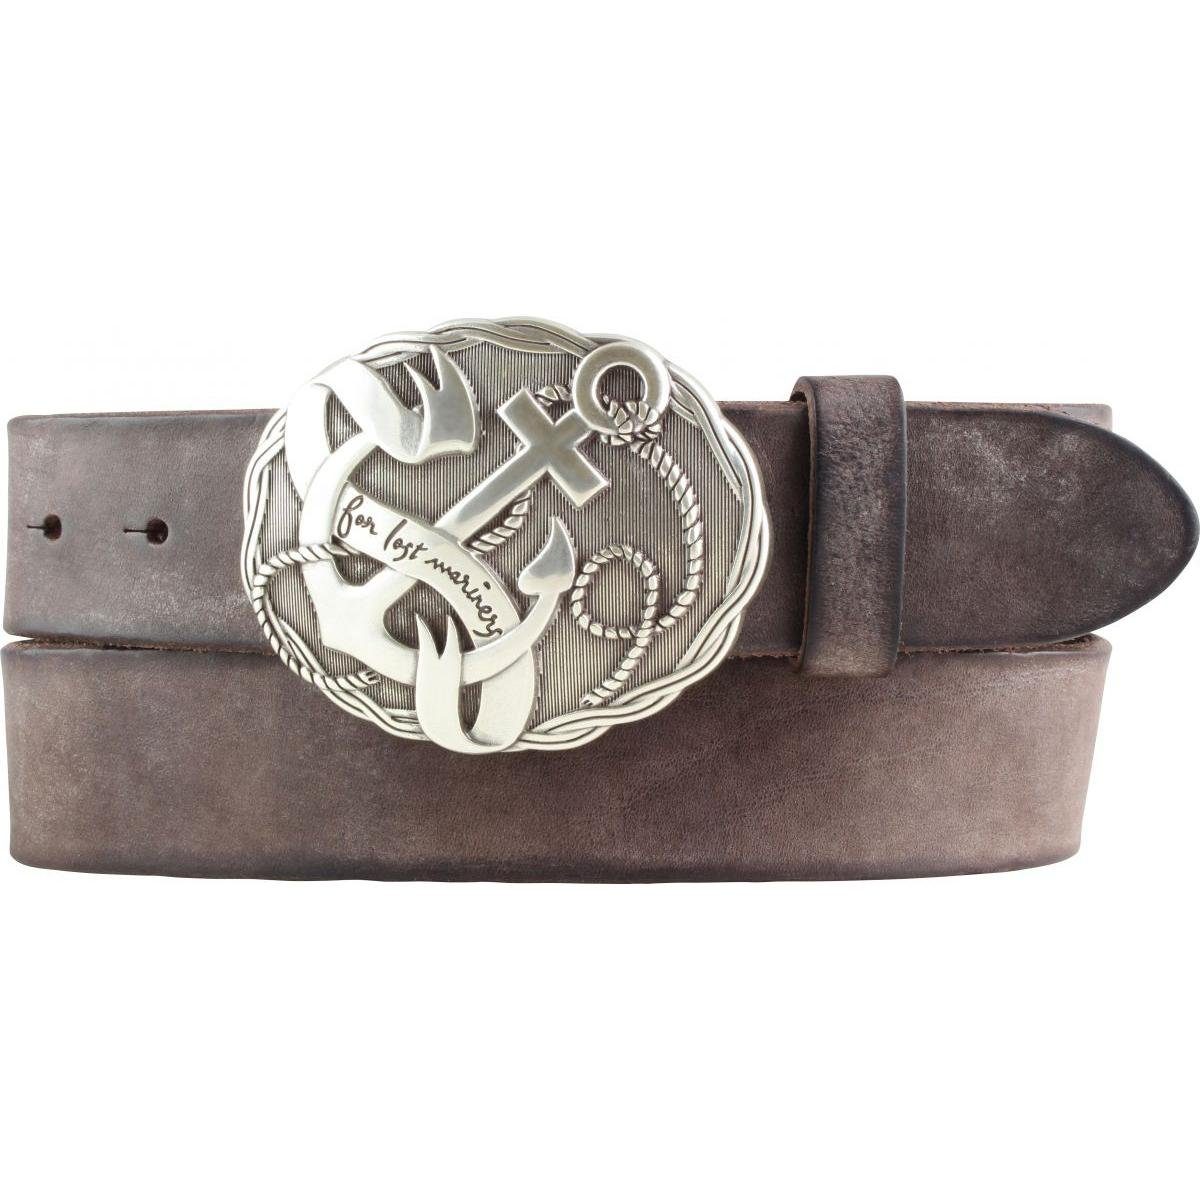 BELTINGER Ledergürtel Gürtel mit Anker-Gürtelschnalle aus weichem Vollrindleder 4 cm Used-Lo Braun, Silber